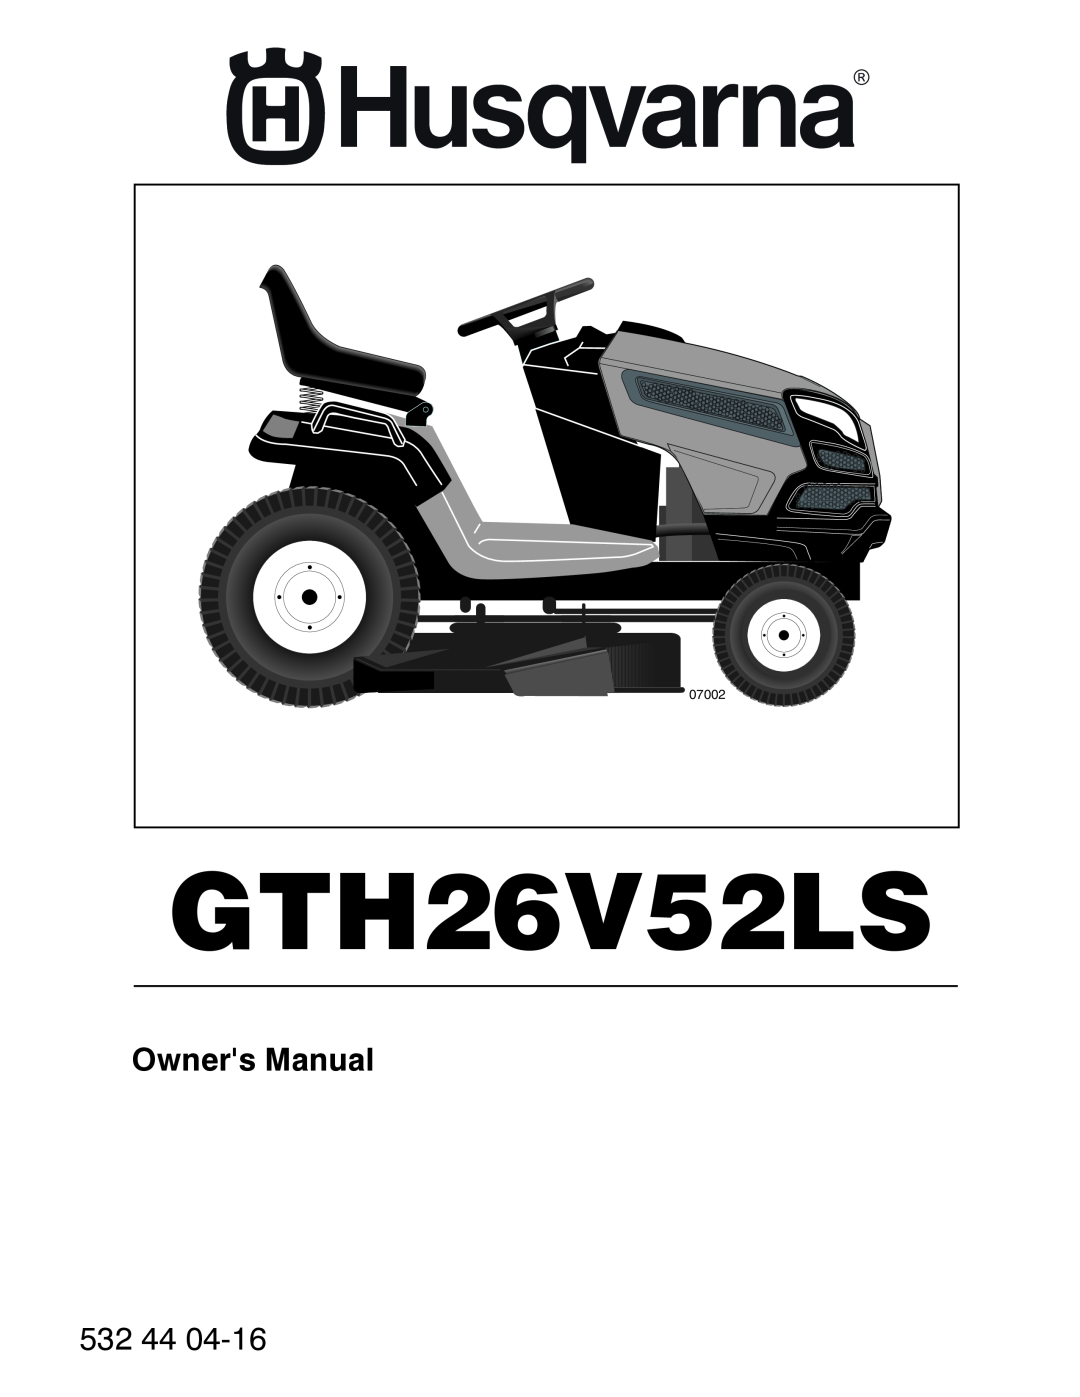 Husqvarna GTH26V52LS owner manual 532, 07002 